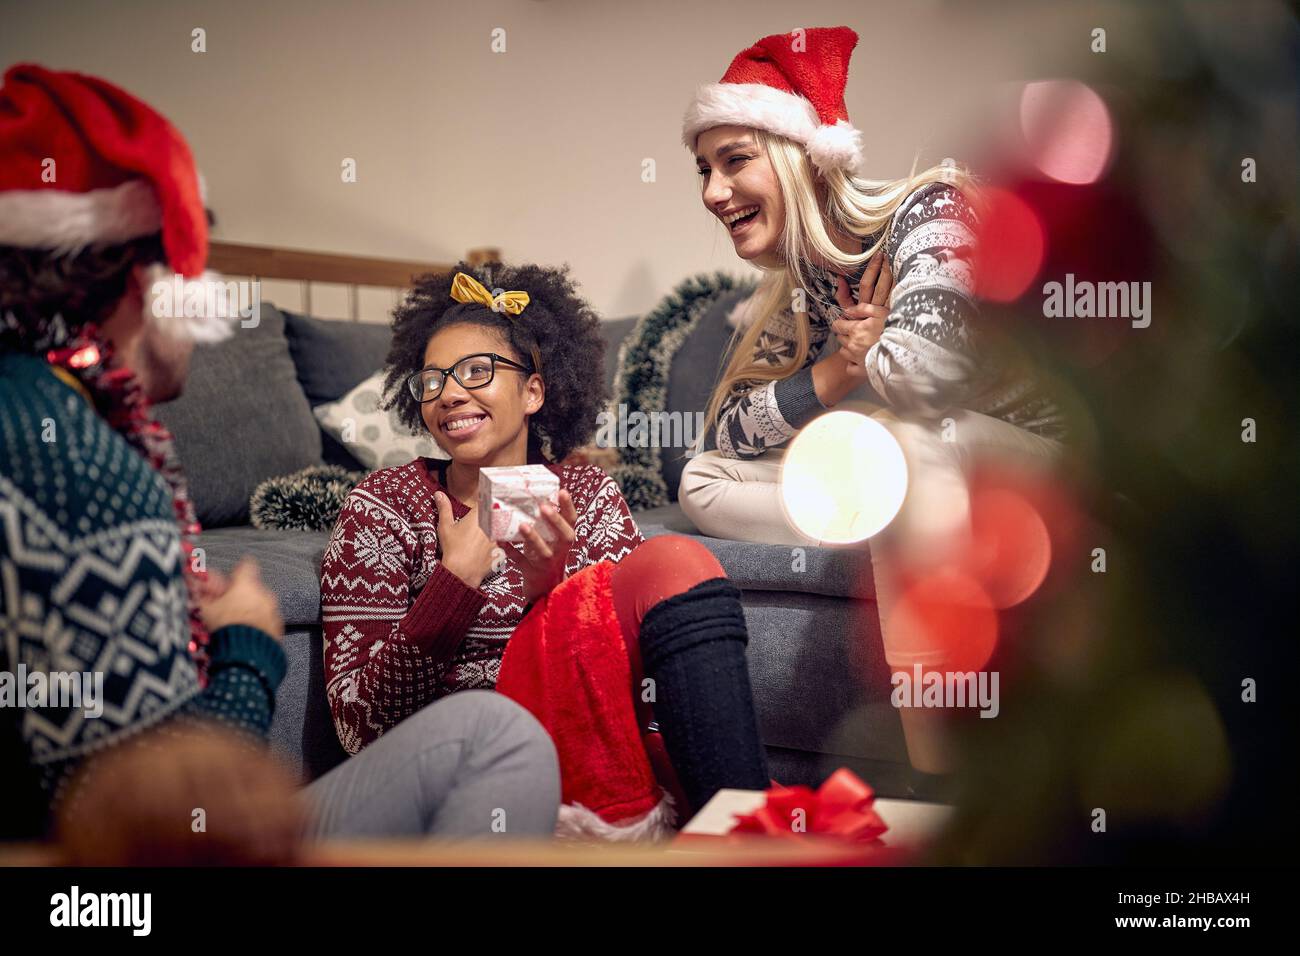 Una ragazza è toccata da un regalo che ha ottenuto dagli amici durante la festa di Capodanno in un'atmosfera festosa a casa. Natale, Capodanno, festa, festa Foto Stock